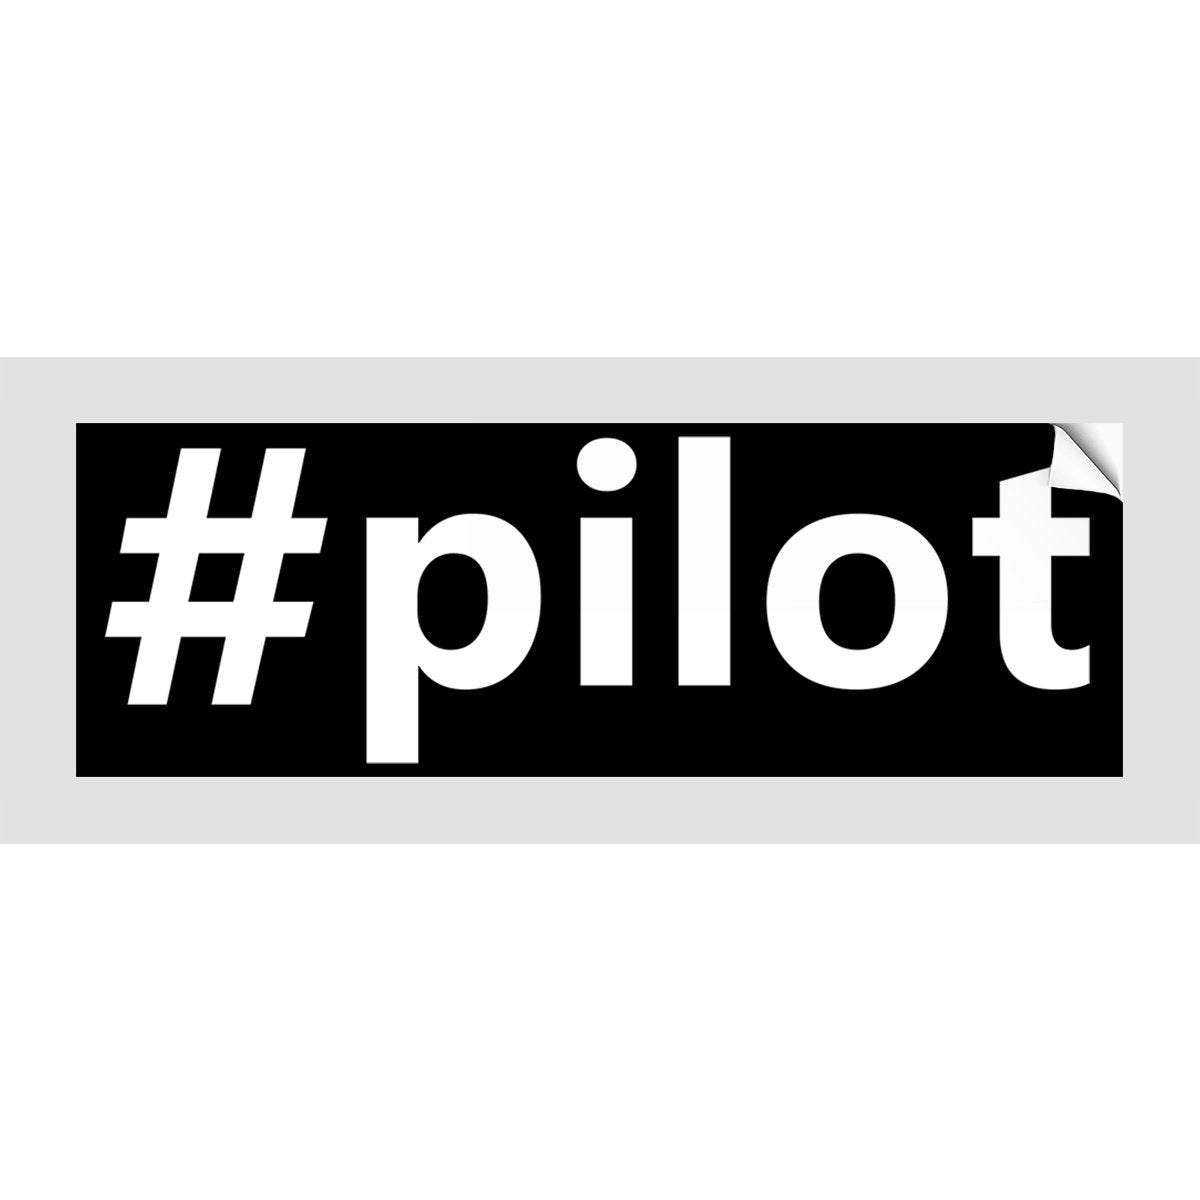 # PILOT